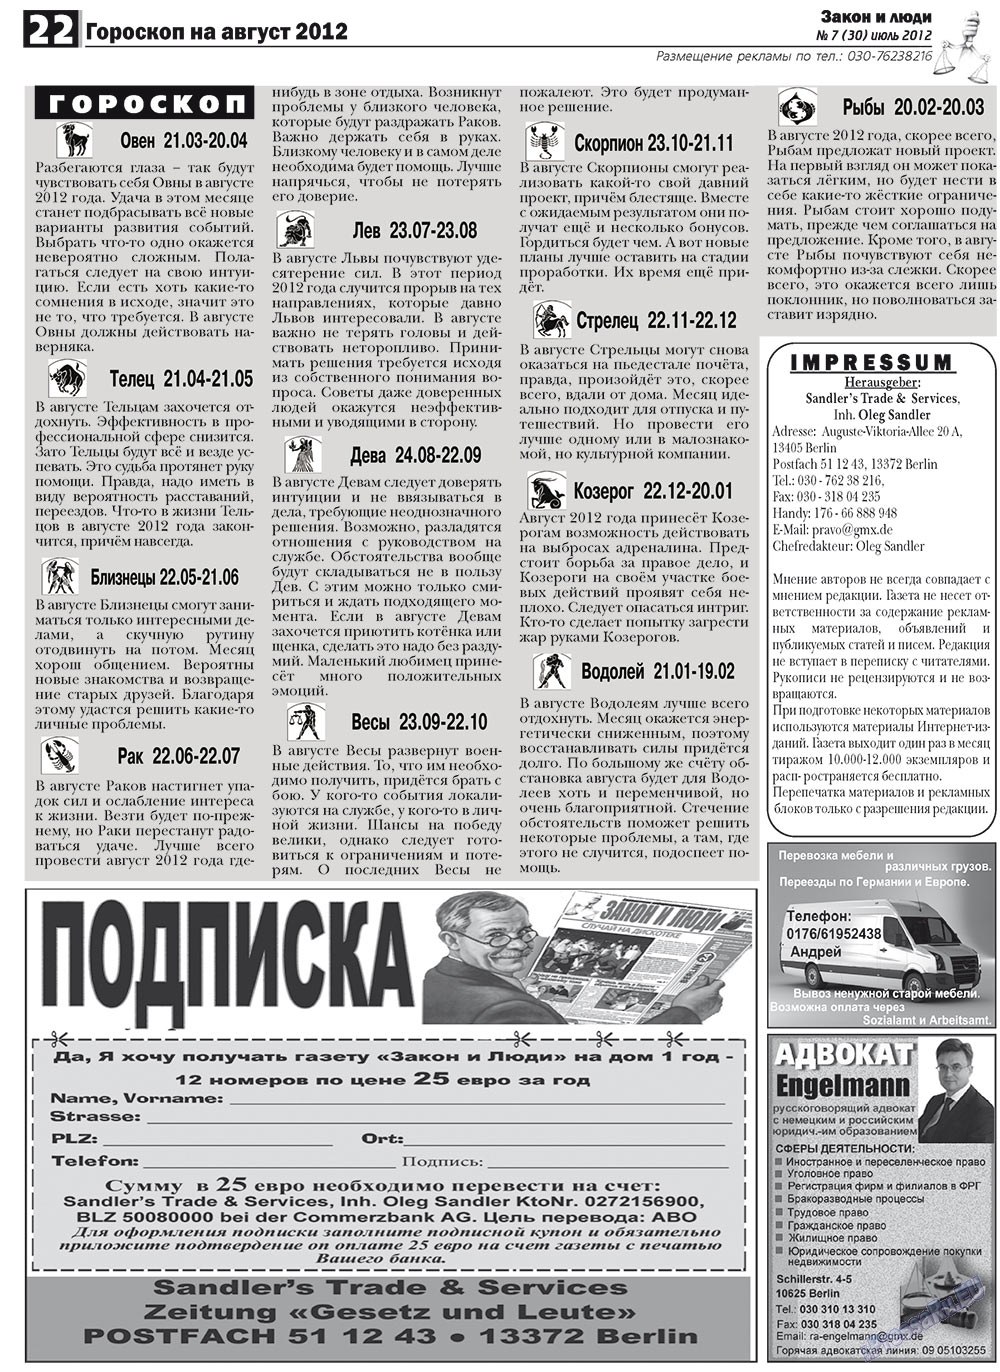 Закон и люди, газета. 2012 №7 стр.22